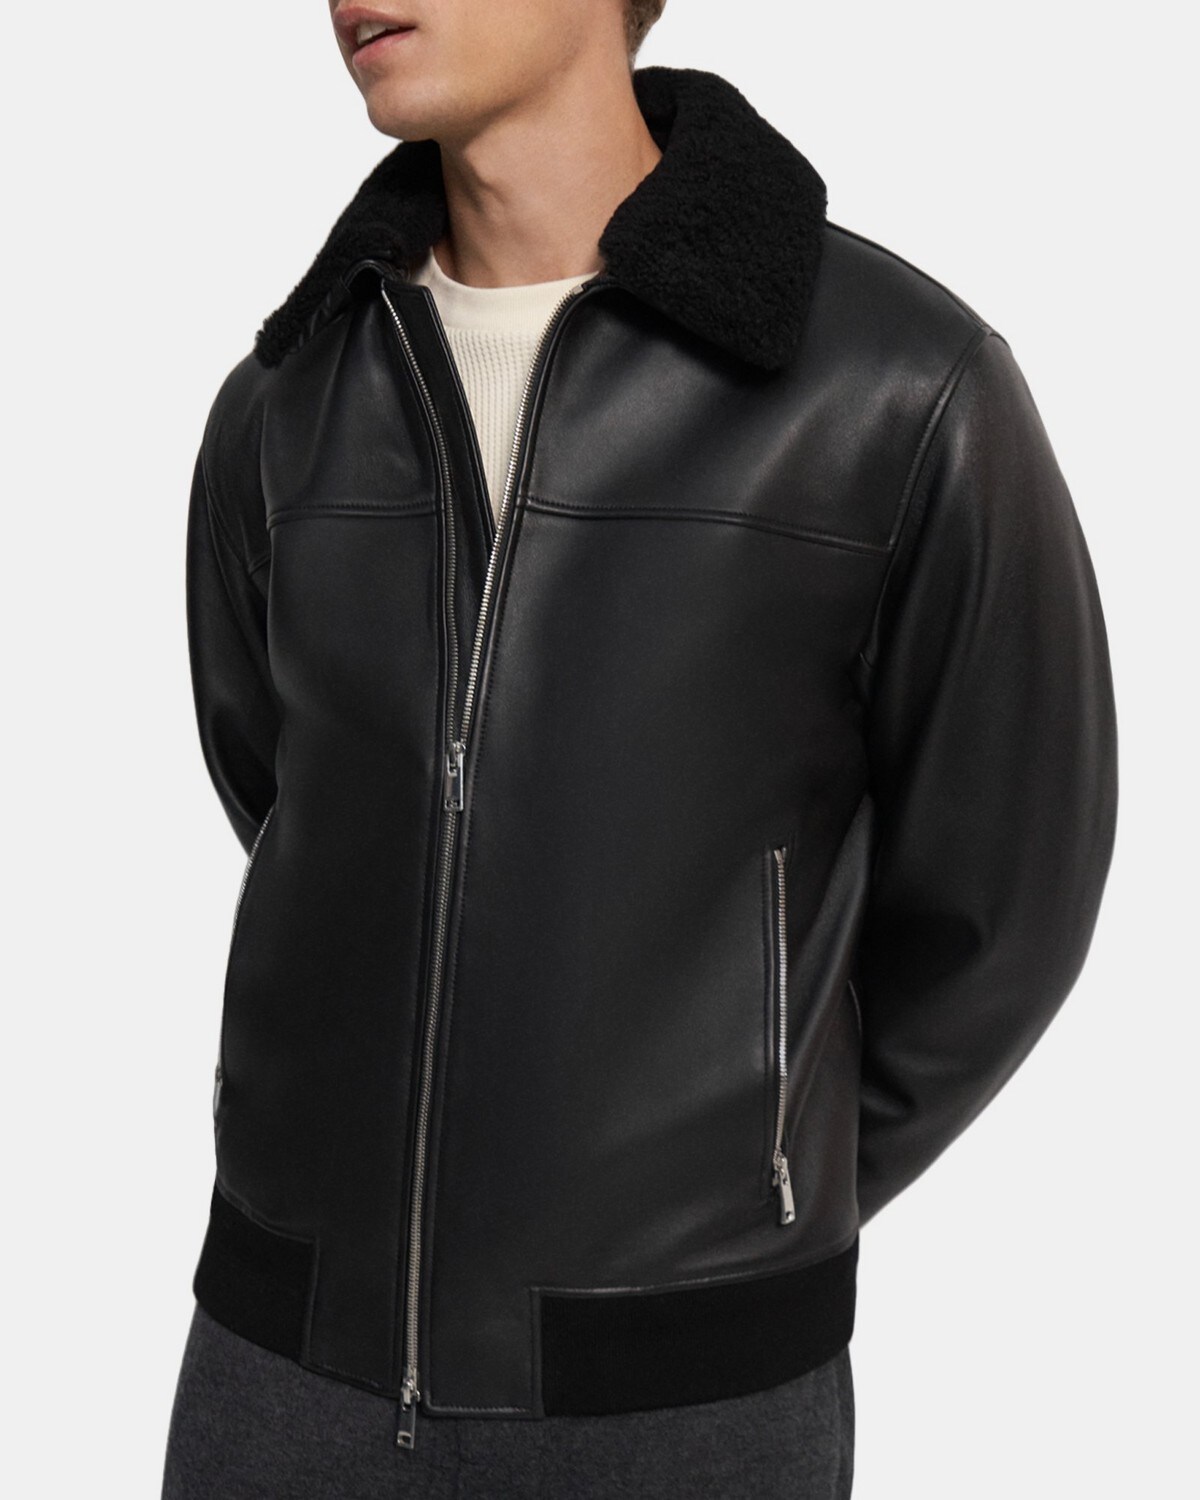 띠어리 맨 보머 재킷 Theory Bomber Jacket in Leather,BLACK